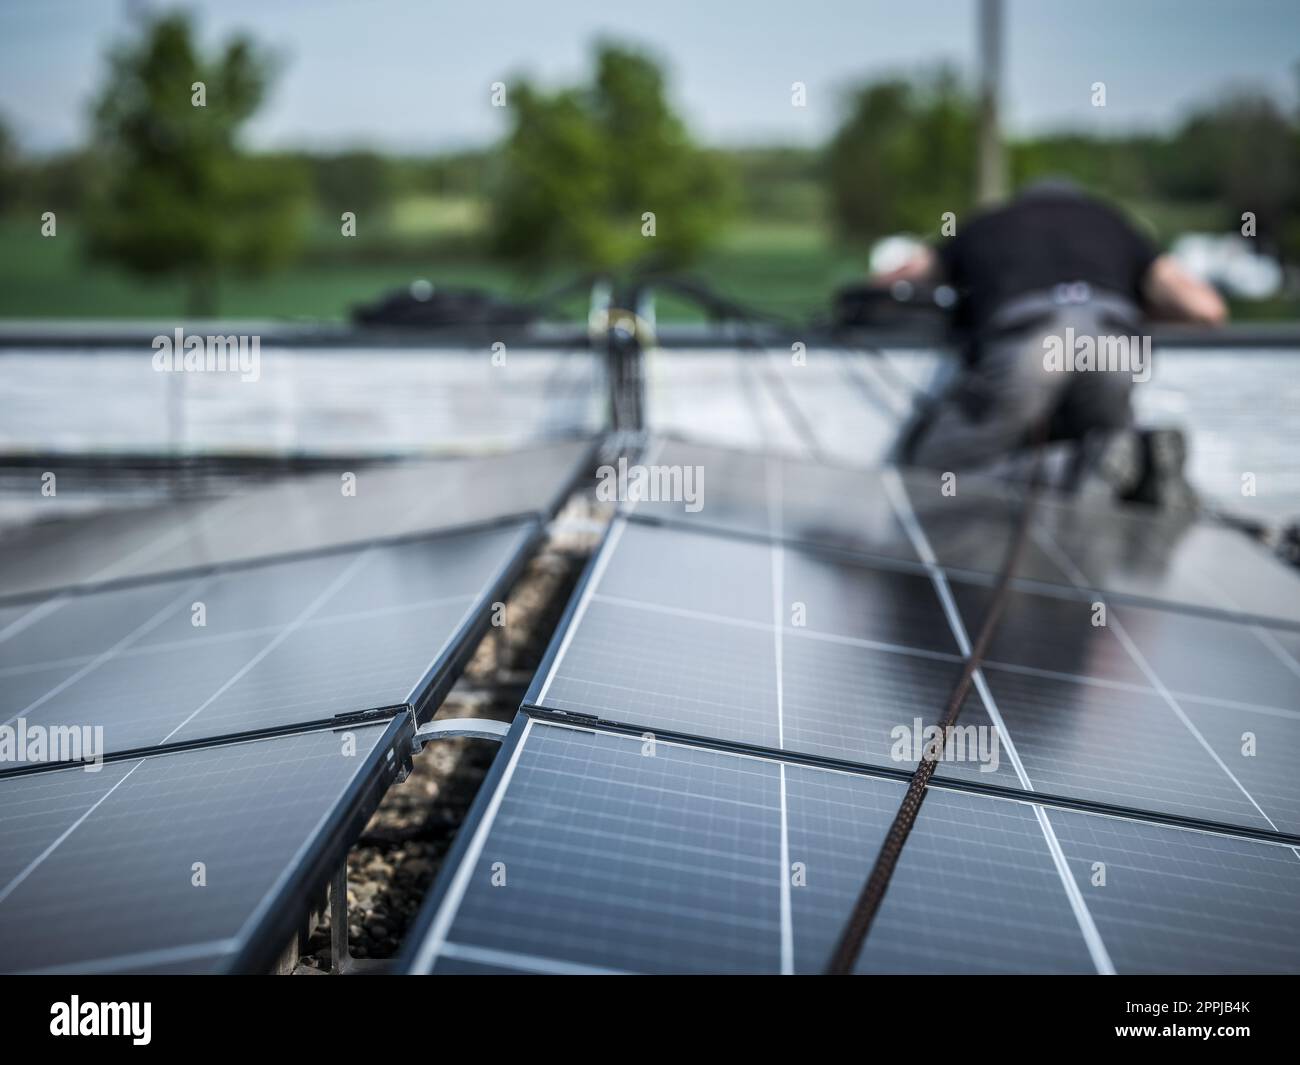 Männliche Teamingenieure, die eigenständige Solarpaneele installieren. Elektriker montieren blaues Solarmodul auf dem Dach eines modernen Hauses. Konzept alternativer Energien Stockfoto